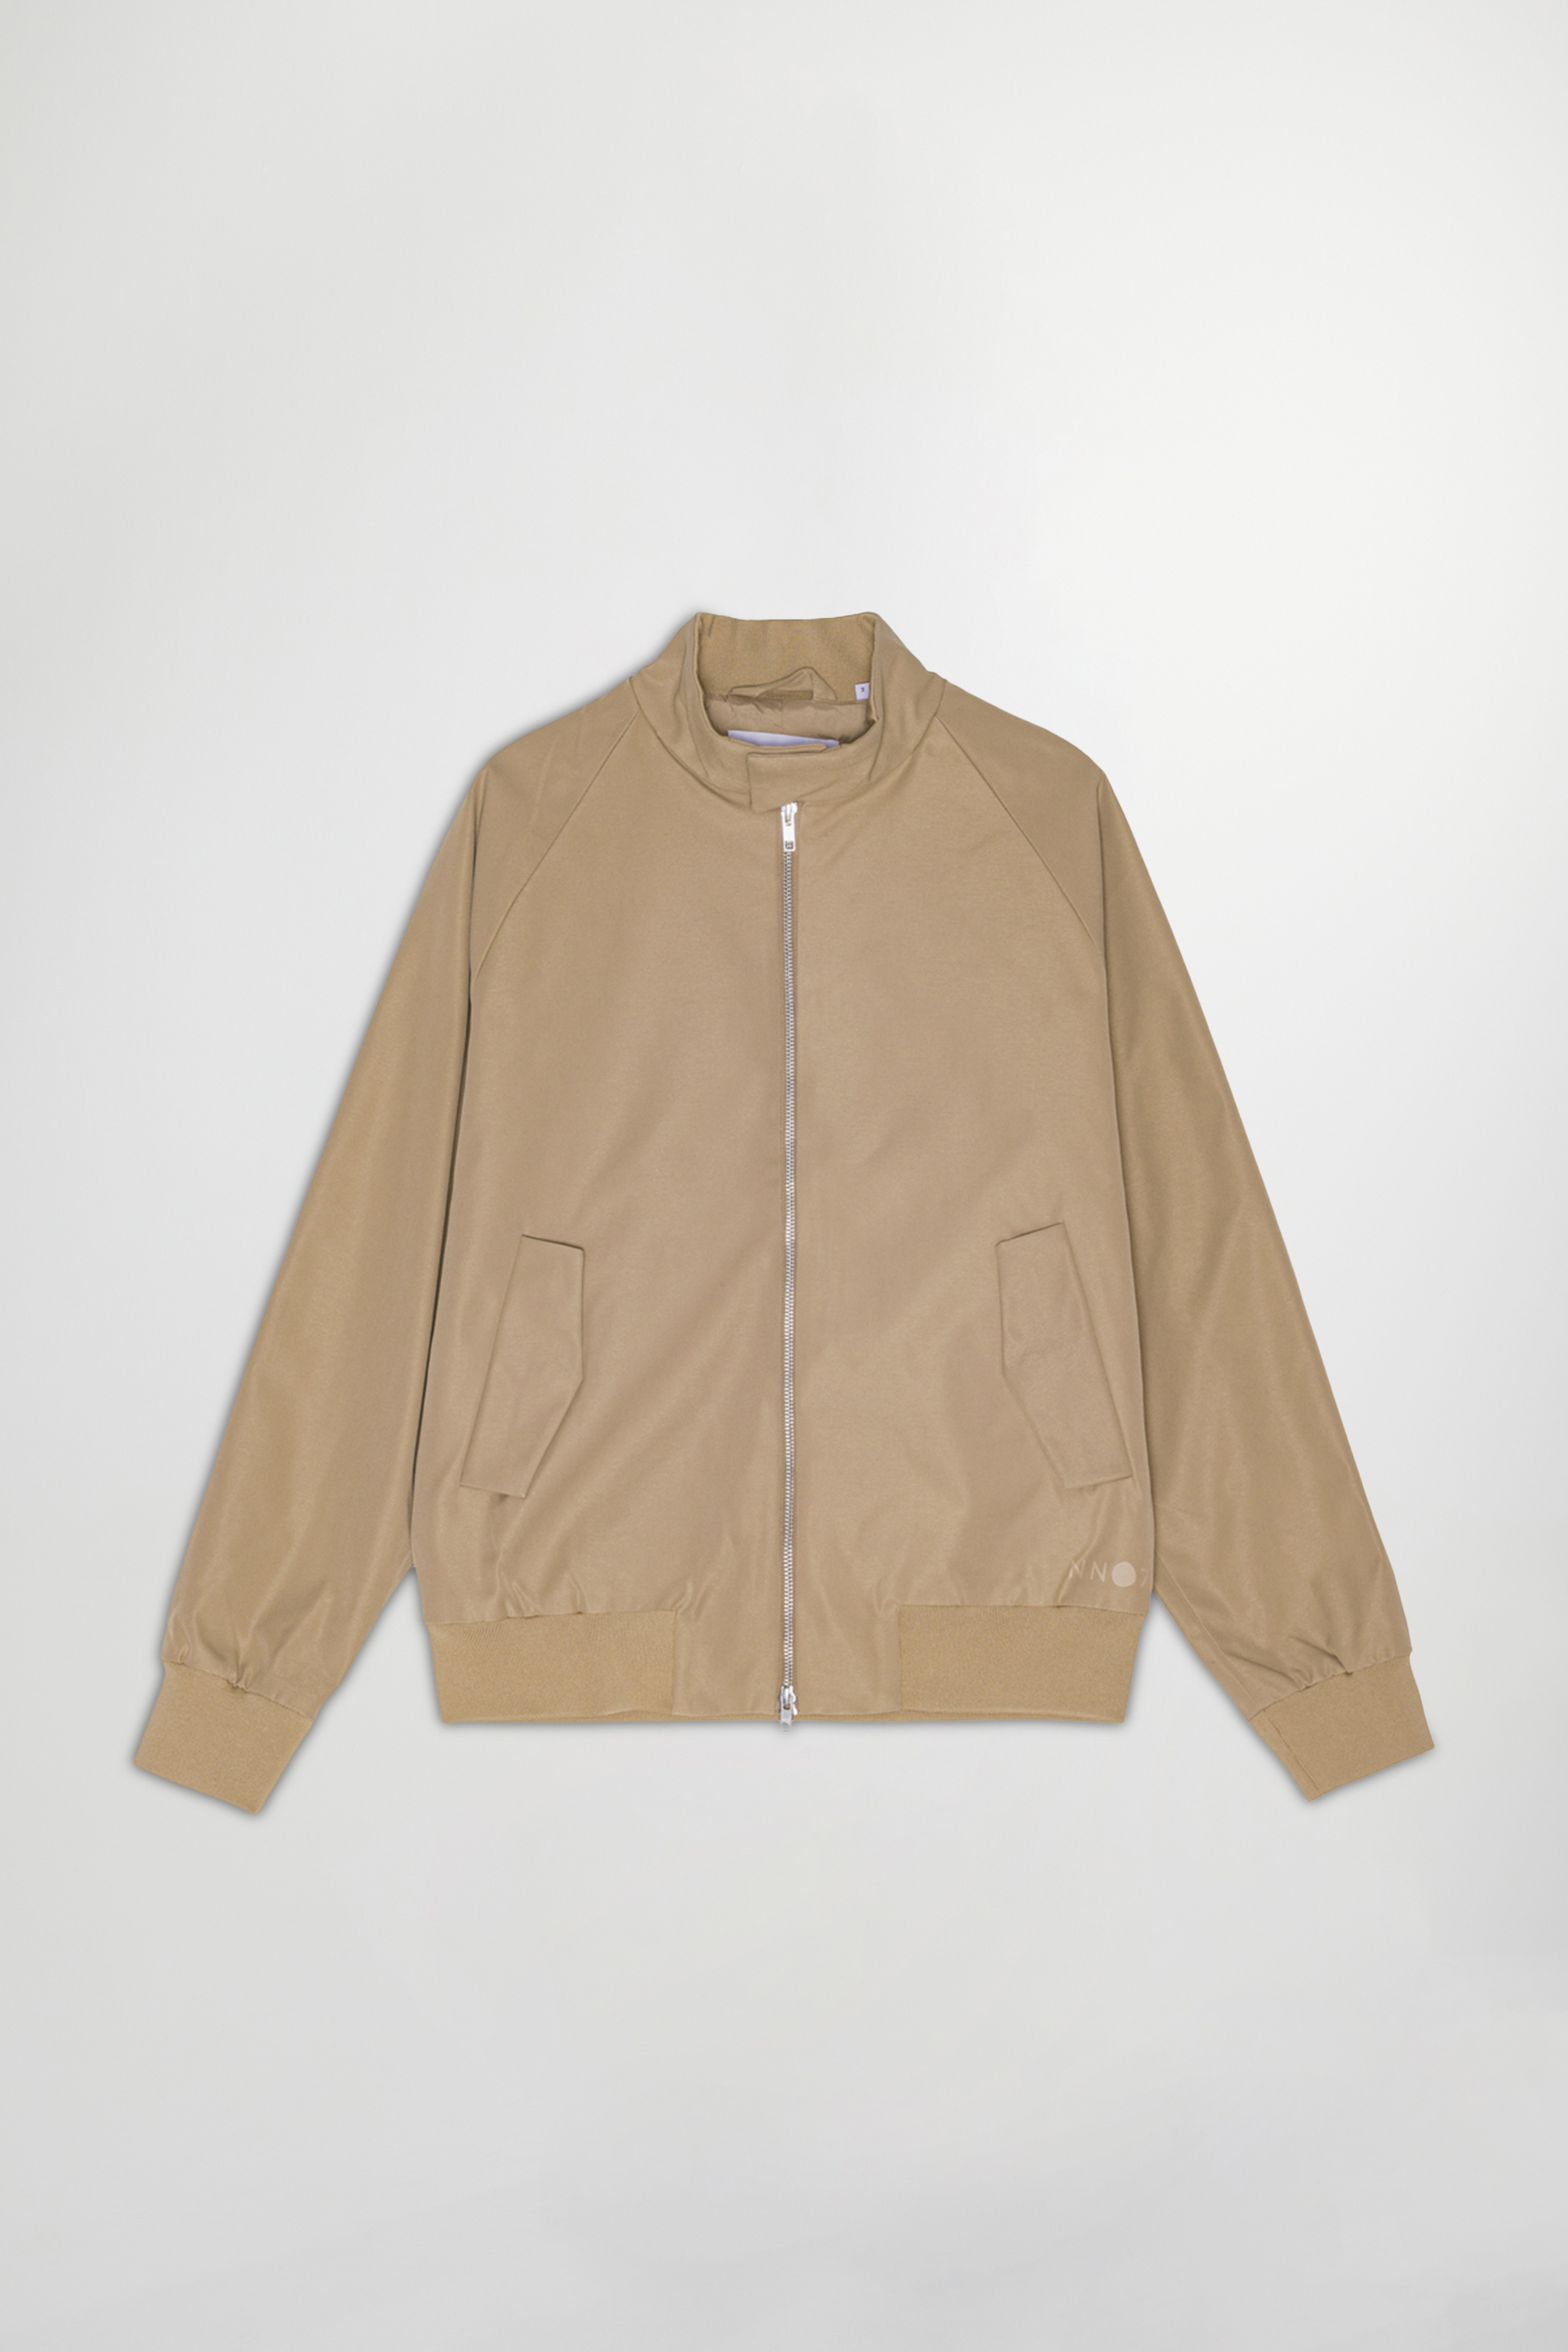 Dawson 1430 men's jacket - Brown - Buy online at NN.07®